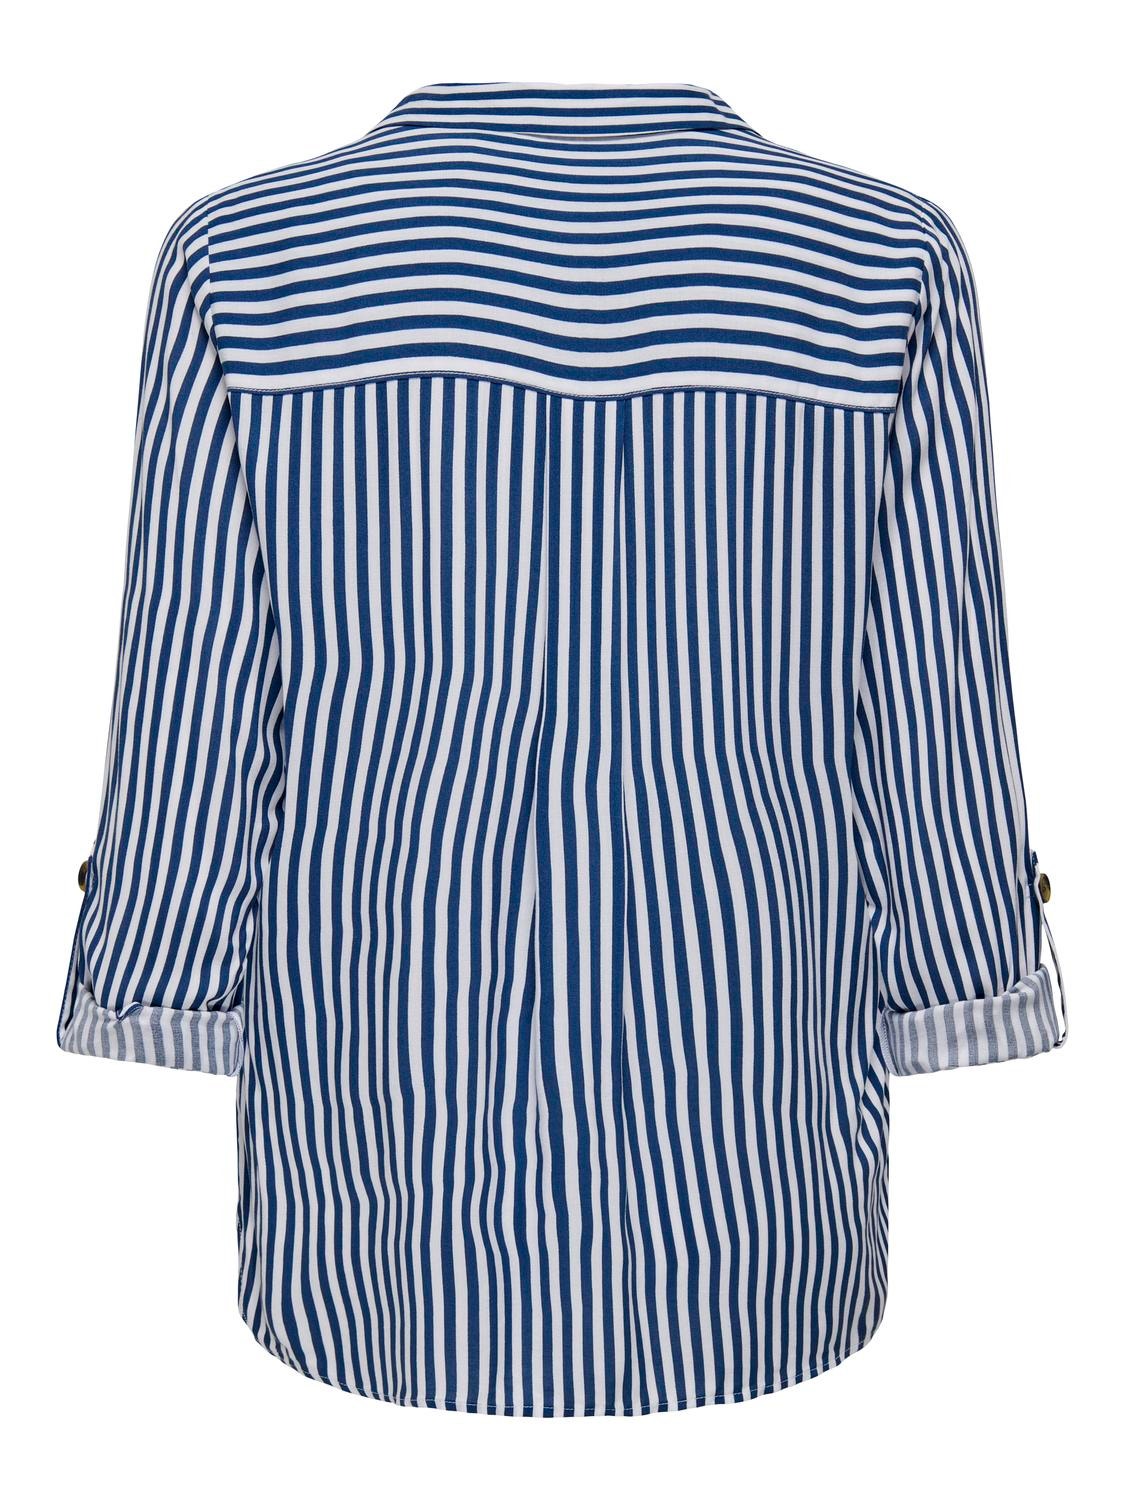 ONLY Camisas Corte standard Cuello de camisa Puños doblados -Peacoat - 15281677